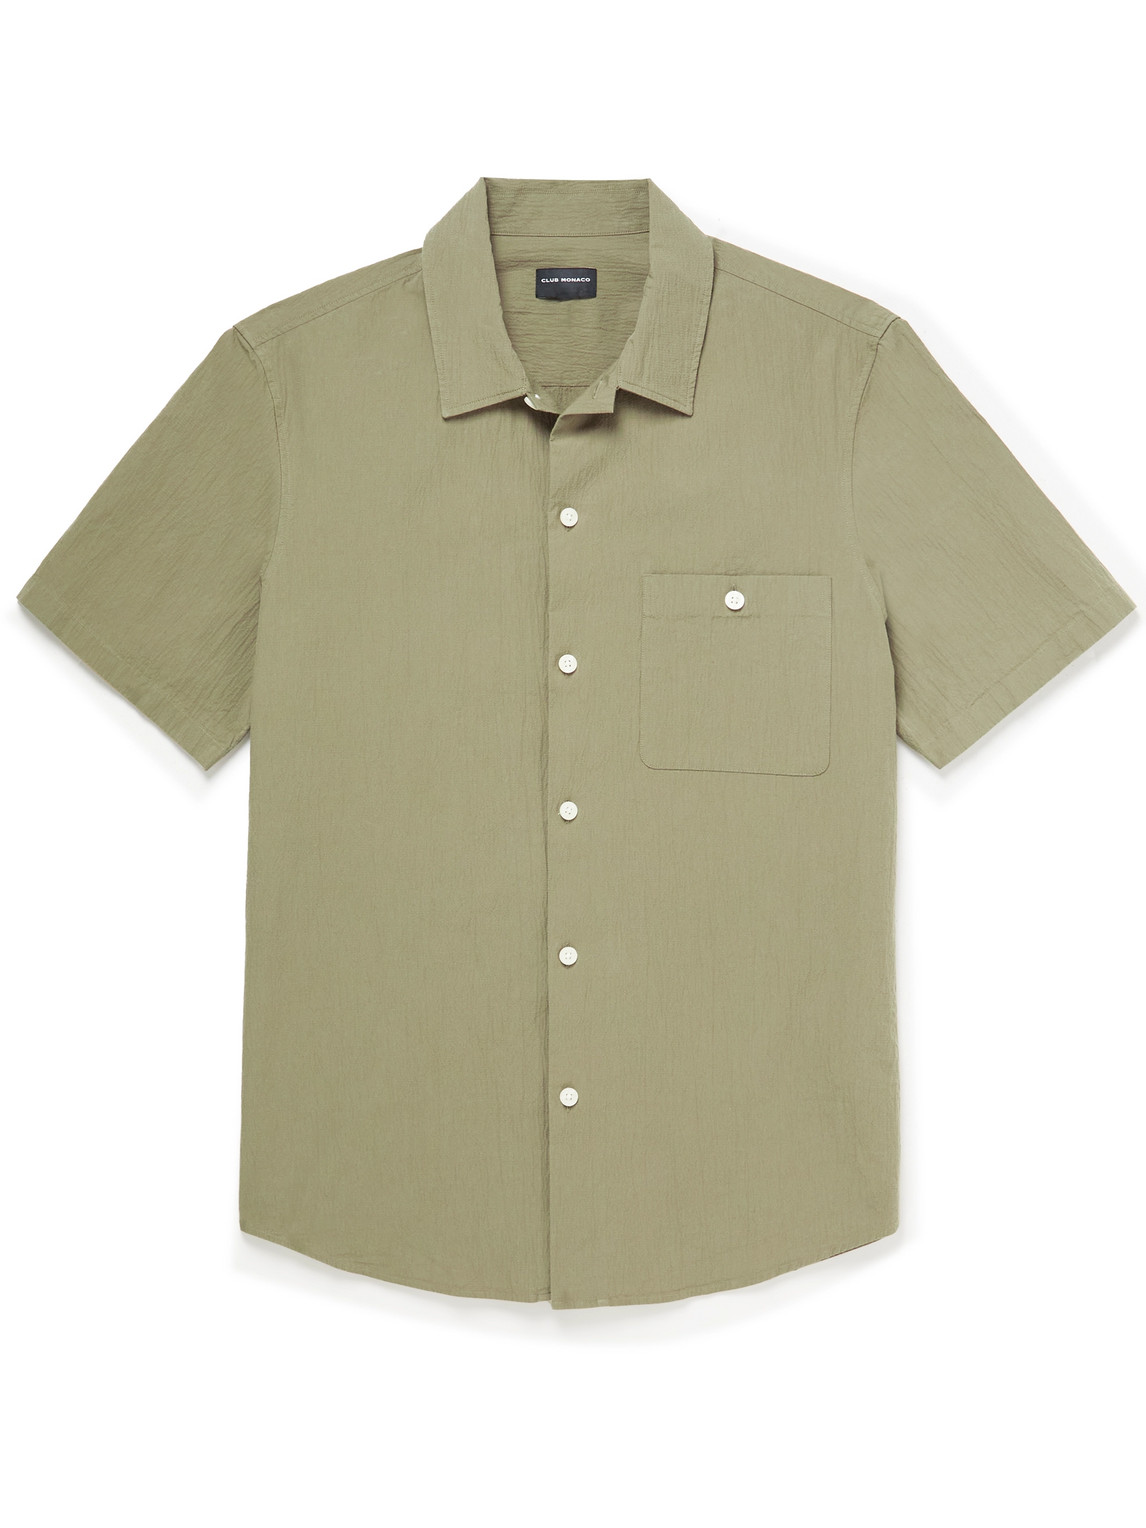 Camp-Collar Cotton-Blend Seersucker Shirt